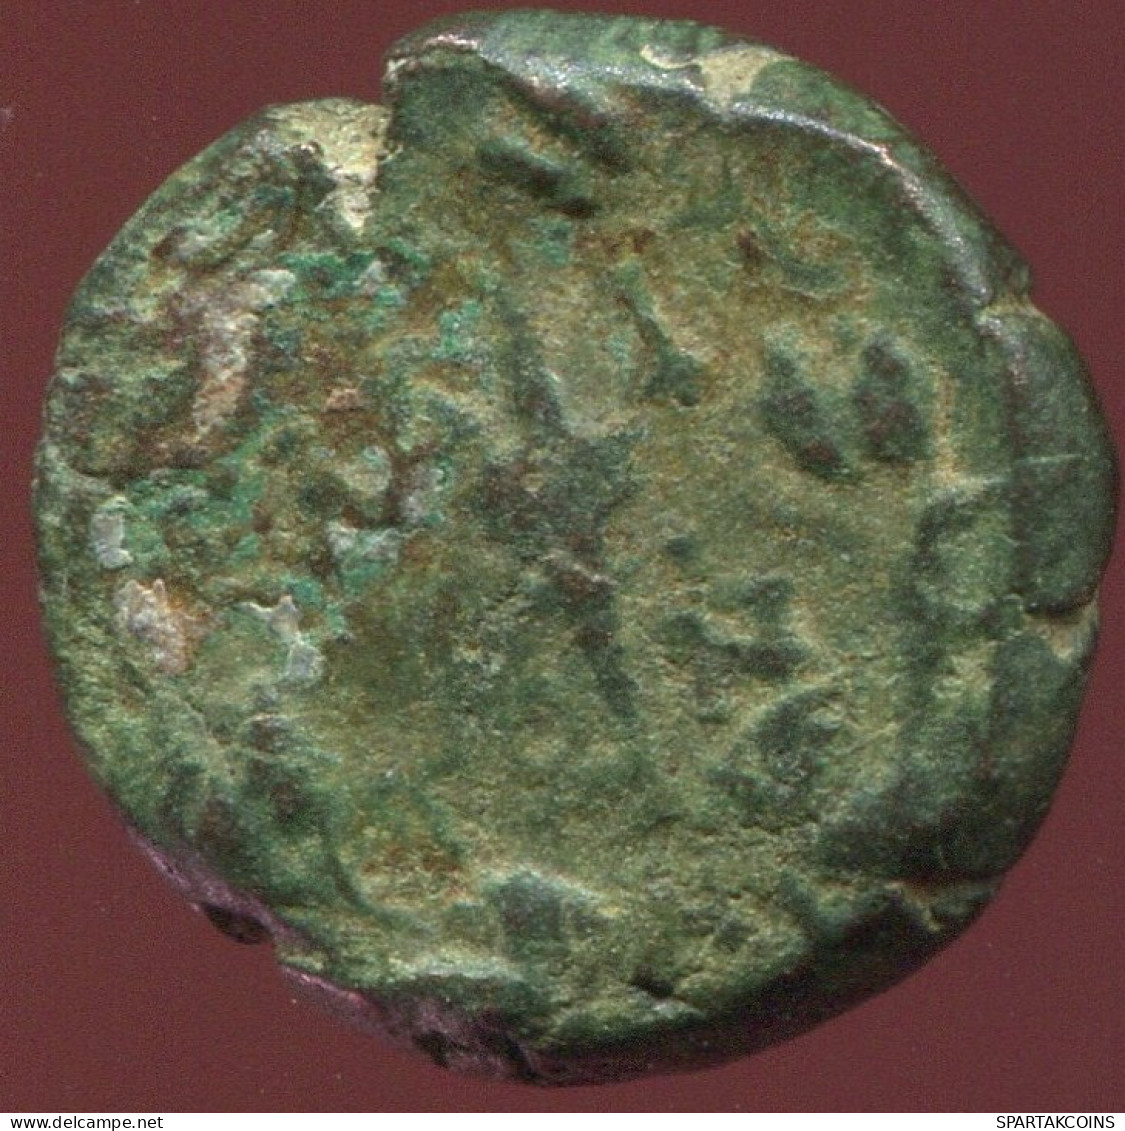 RÖMISCHE PROVINZMÜNZE Roman Provincial Ancient Coin 3.20g/14.50mm #ANT1222.19.D.A - Province